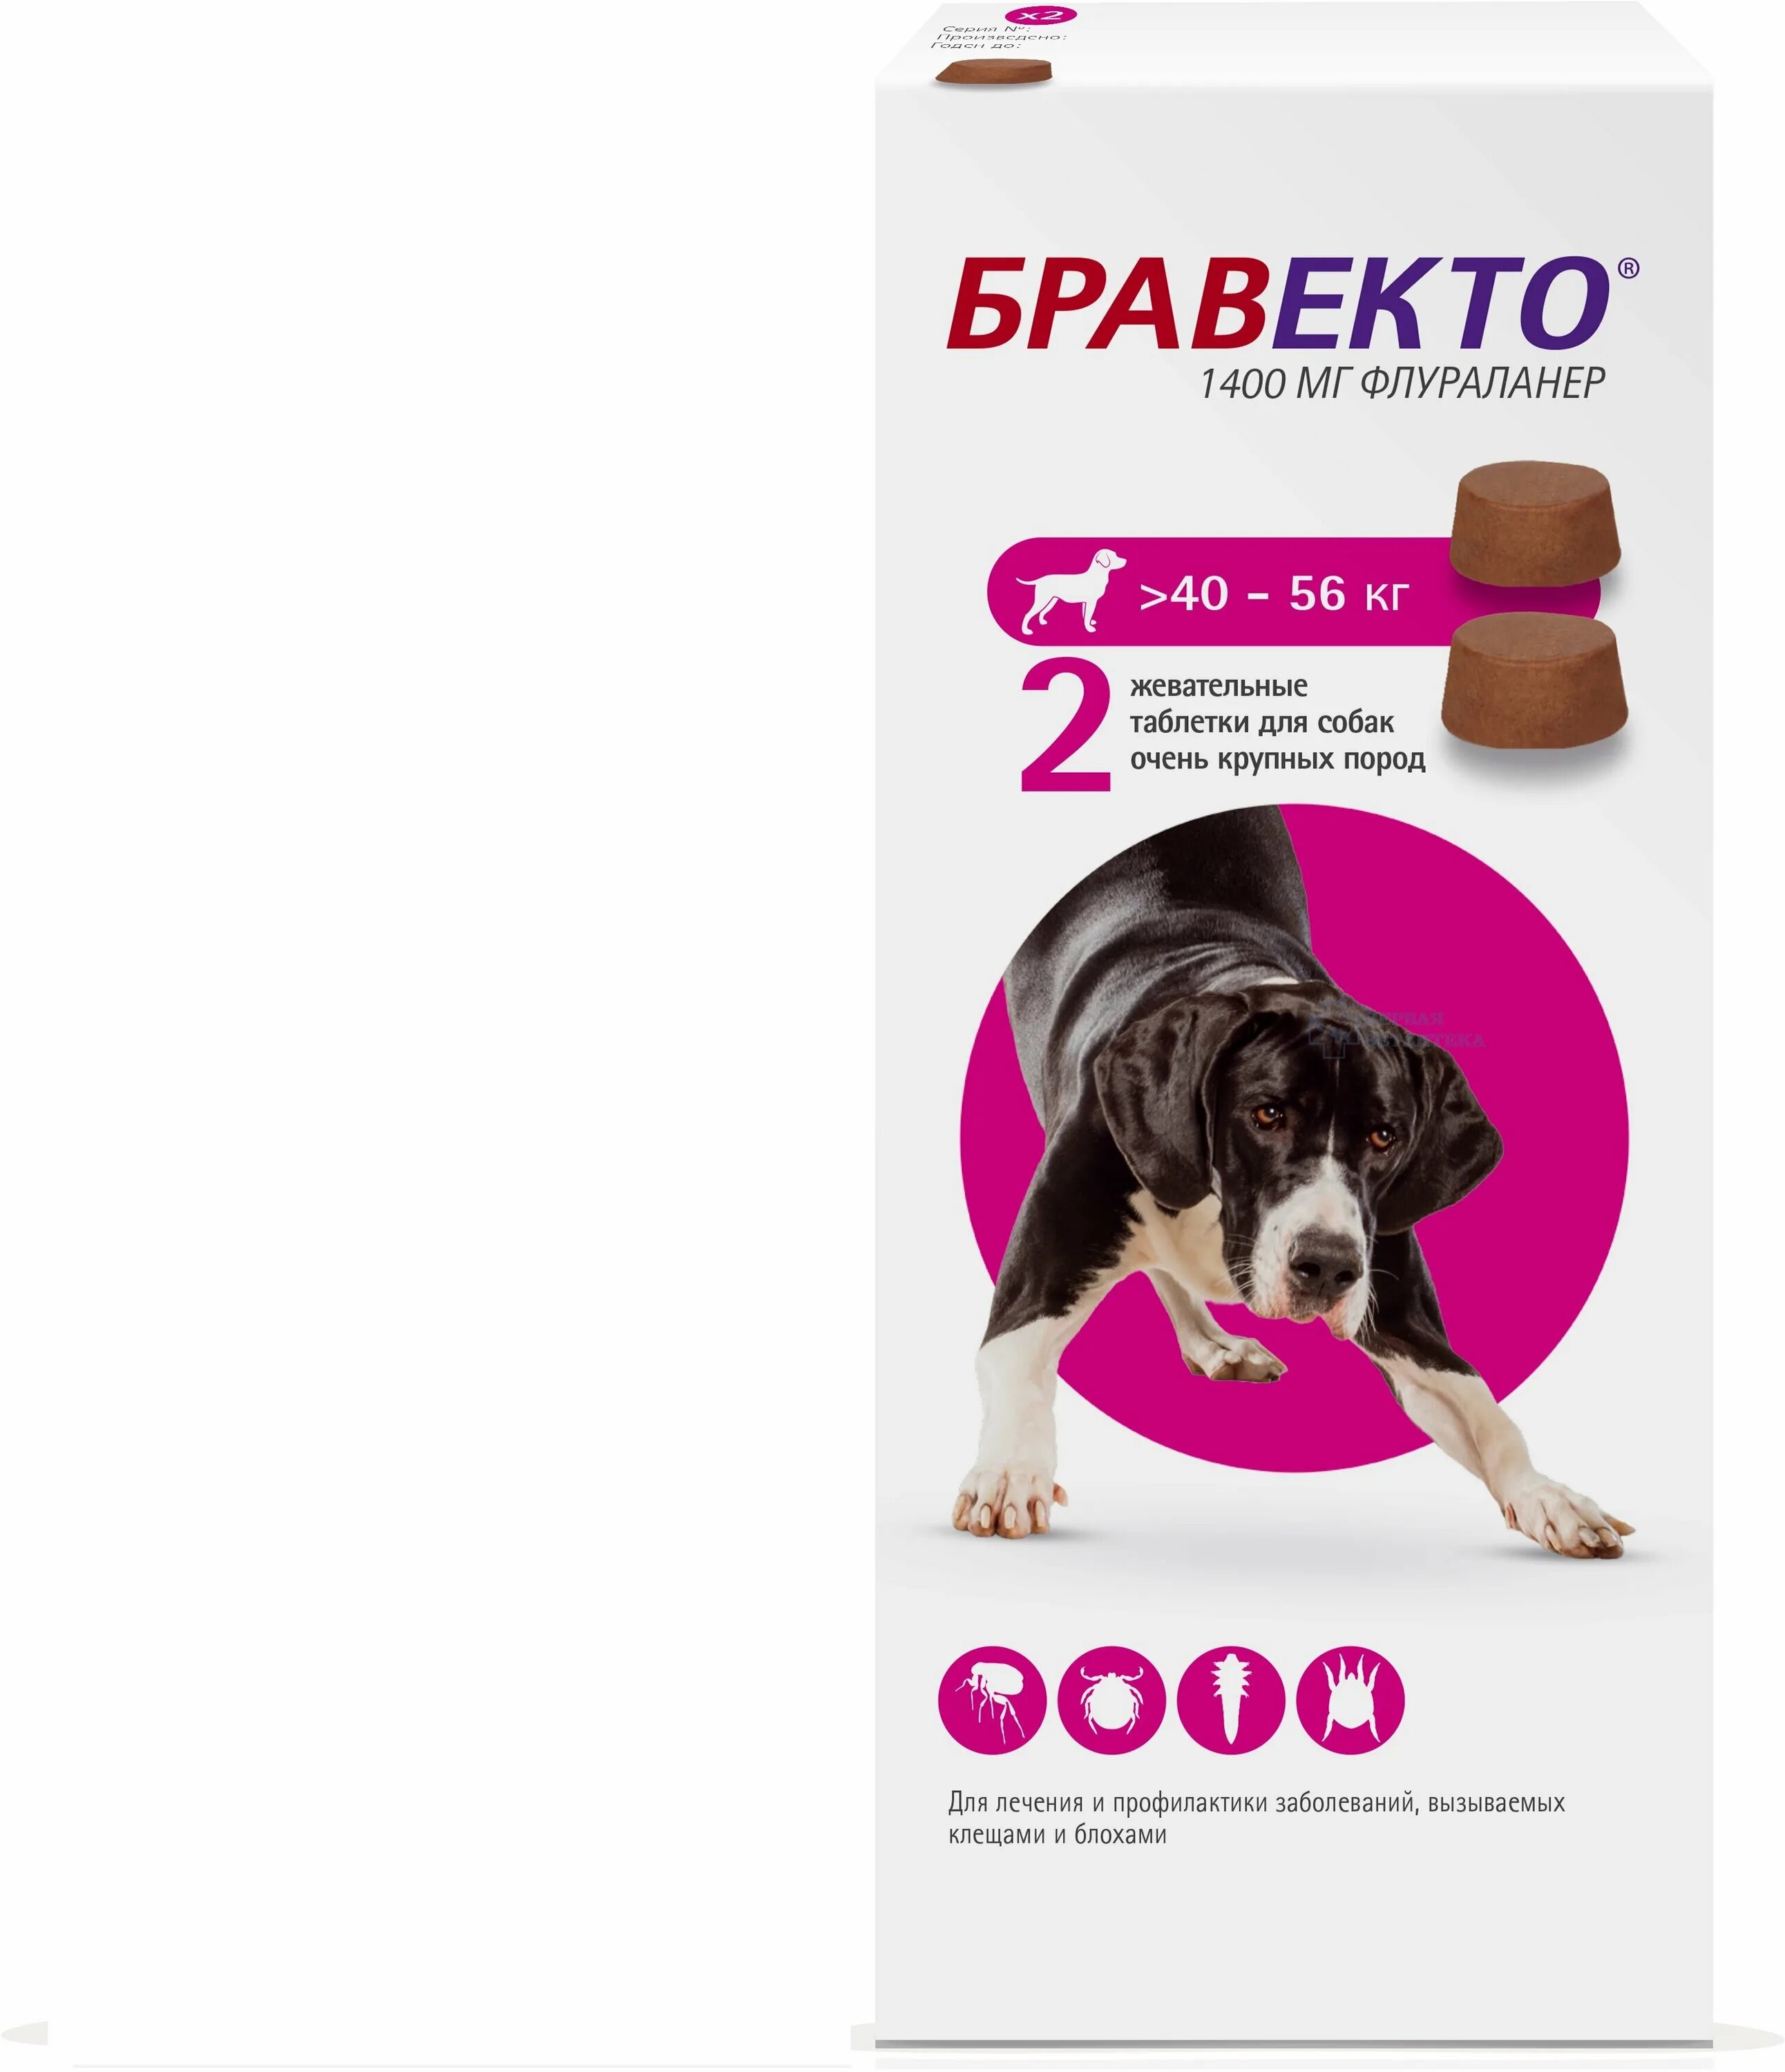 Бравекто для собак от чего. Бравекто таблетки для собак 40-56. Таблетка Бравекто для собак 20-40 2 таблетка. Бравекто (MSD animal Health) таблетки от блох и клещей для собак 40-56 кг. Бравекто 1400 мг для собак.